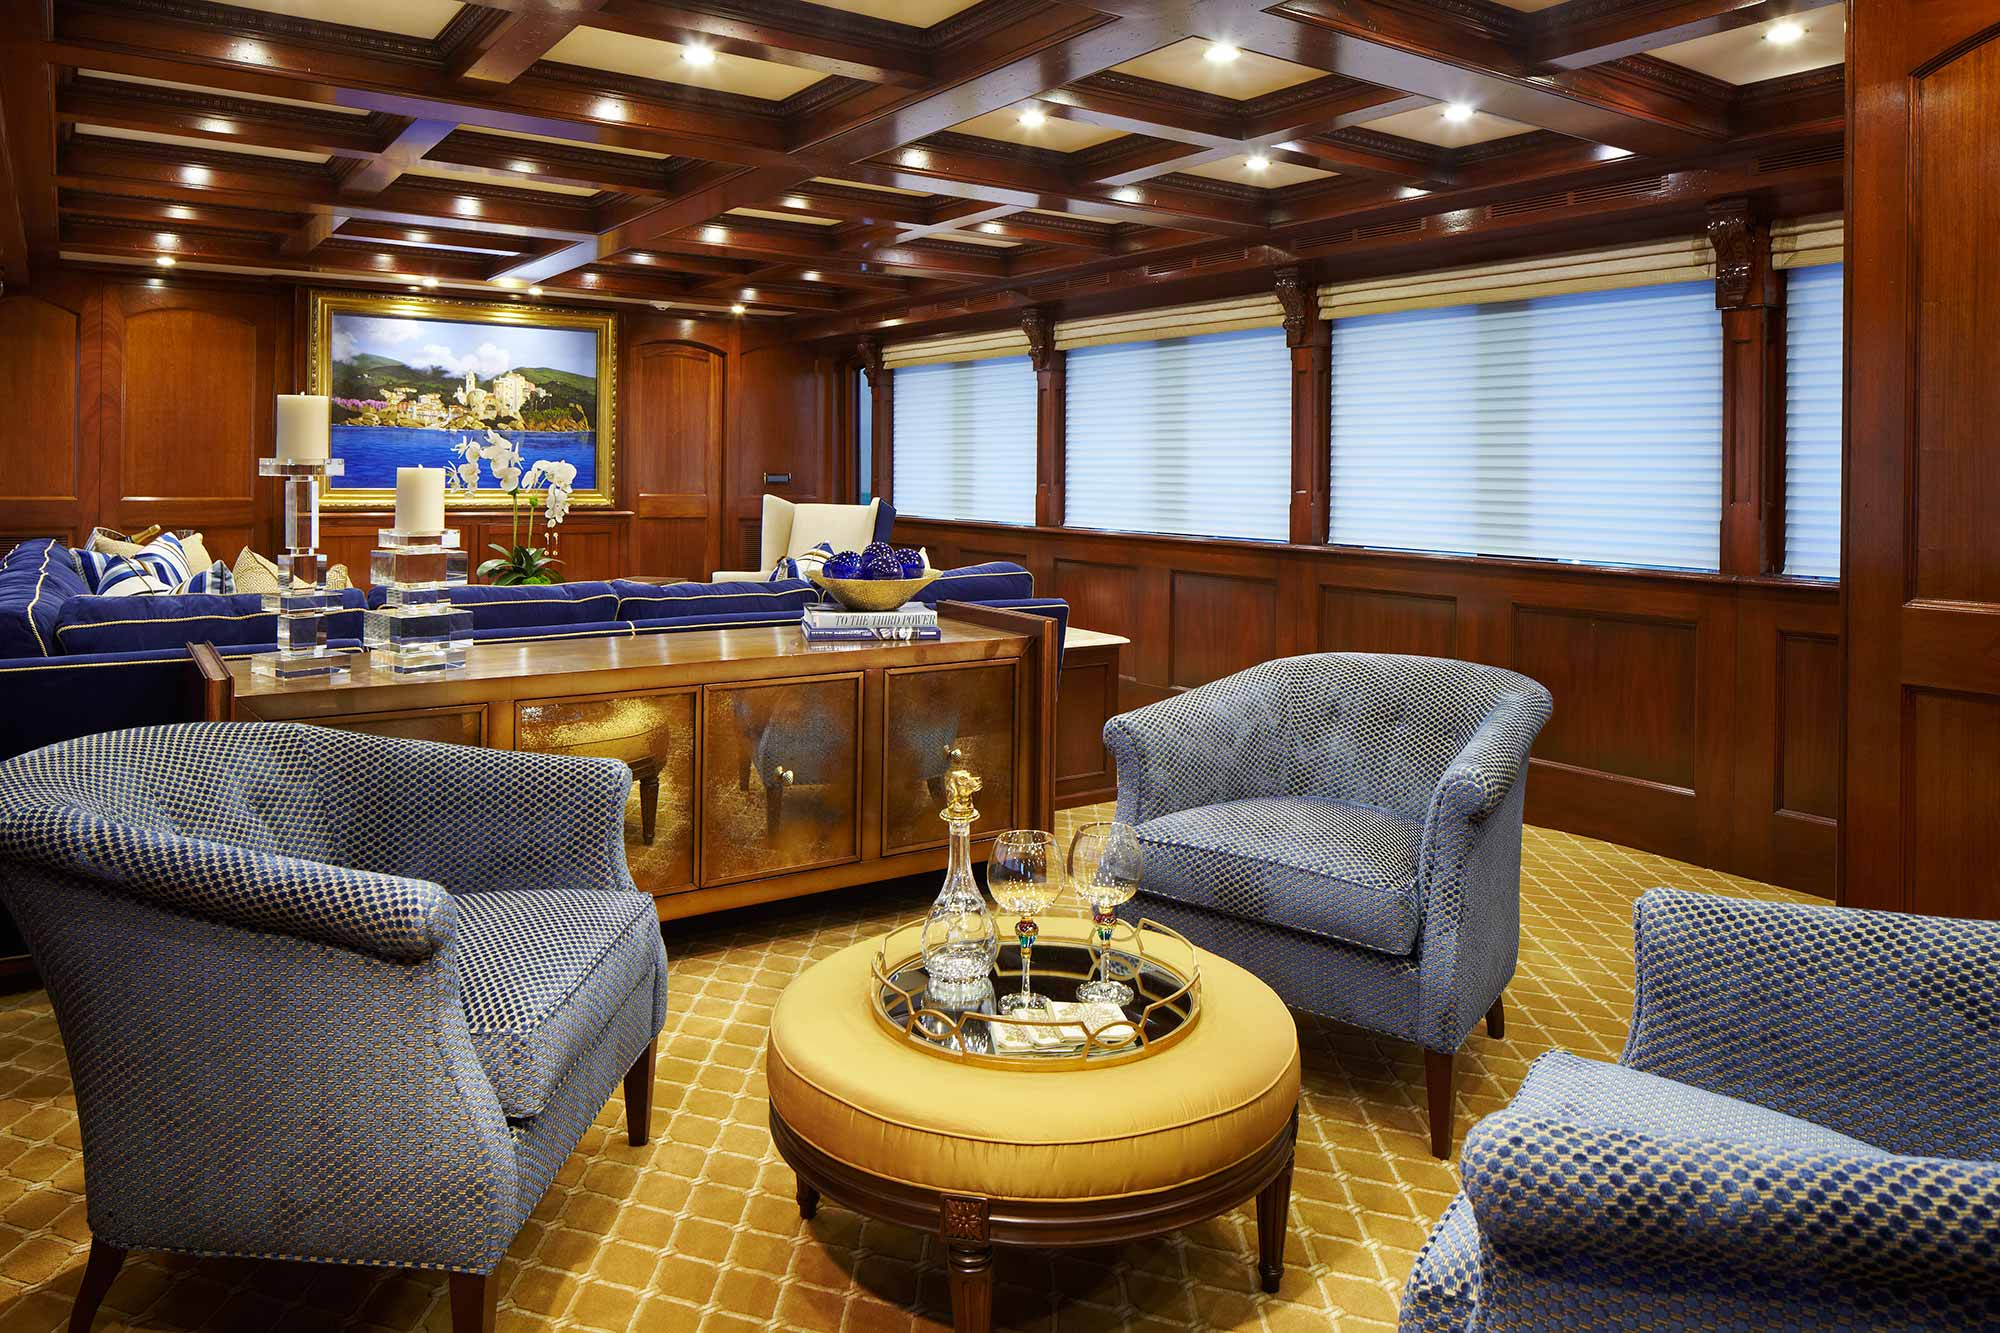 Luxury Motoe Yacht CHRISTINA O Available in the Caribbean I BGYB